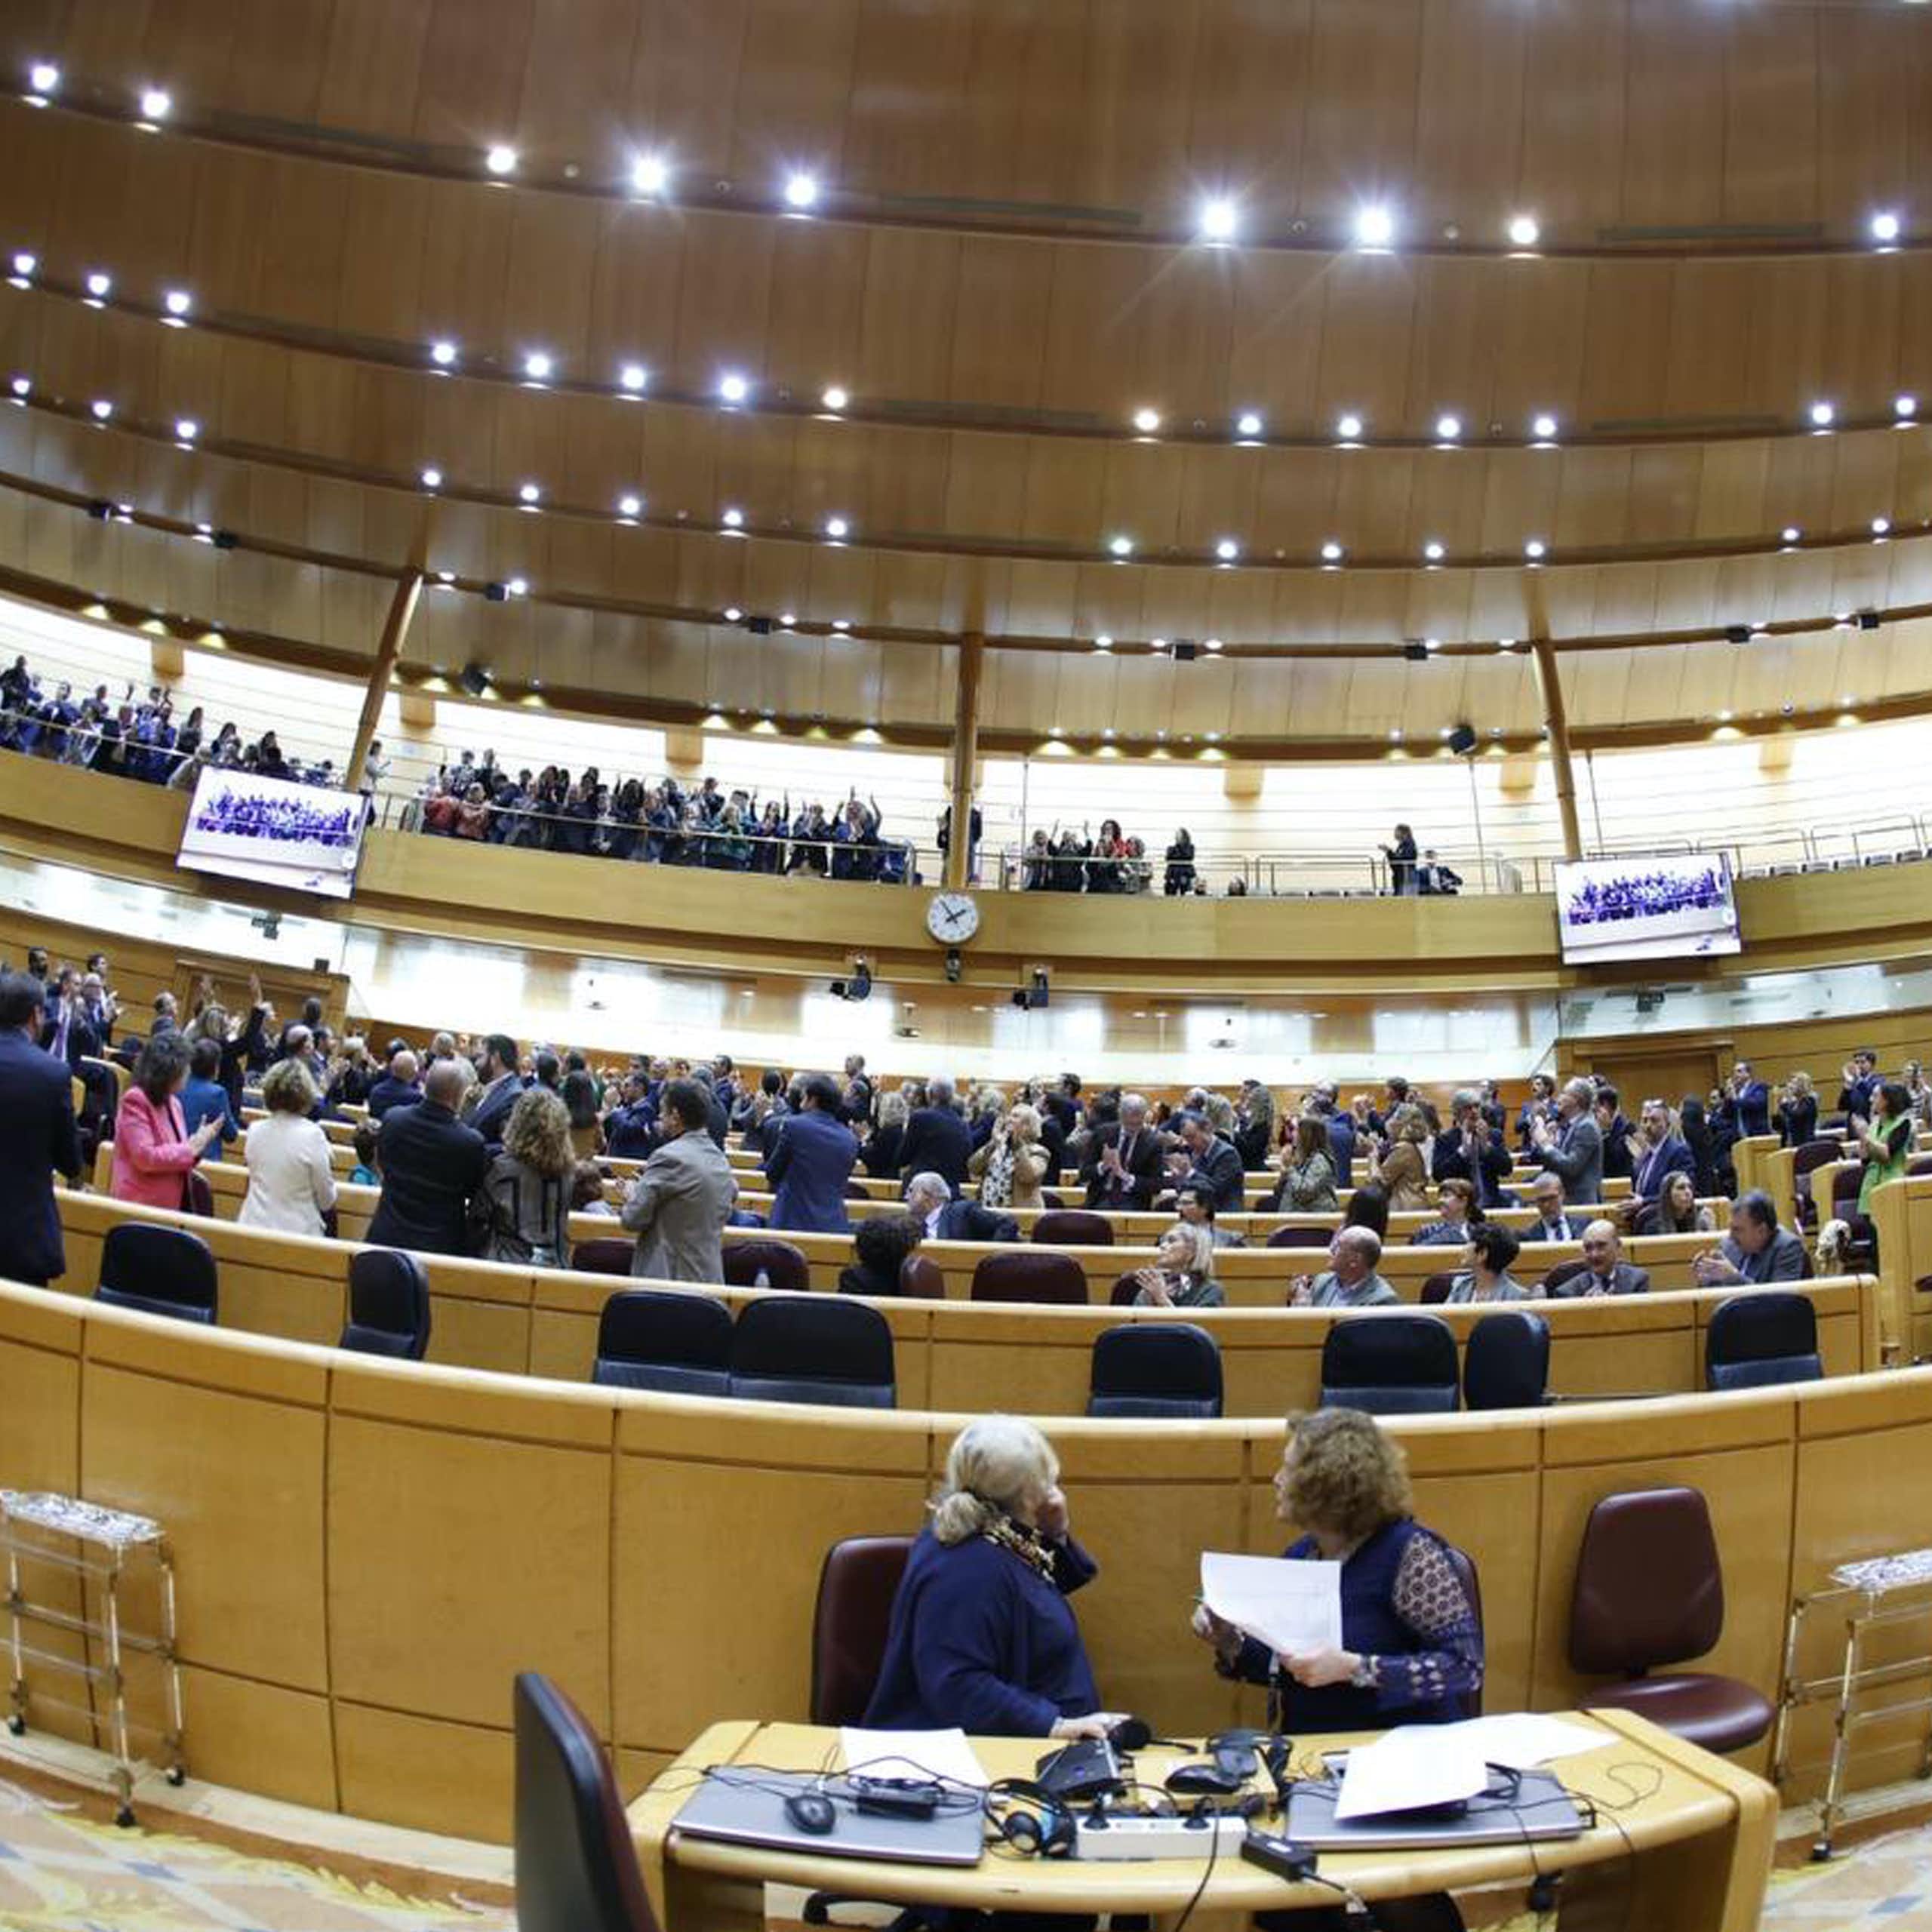 Los diputados e invitados en las tribunas del Congreso de los Diputados.